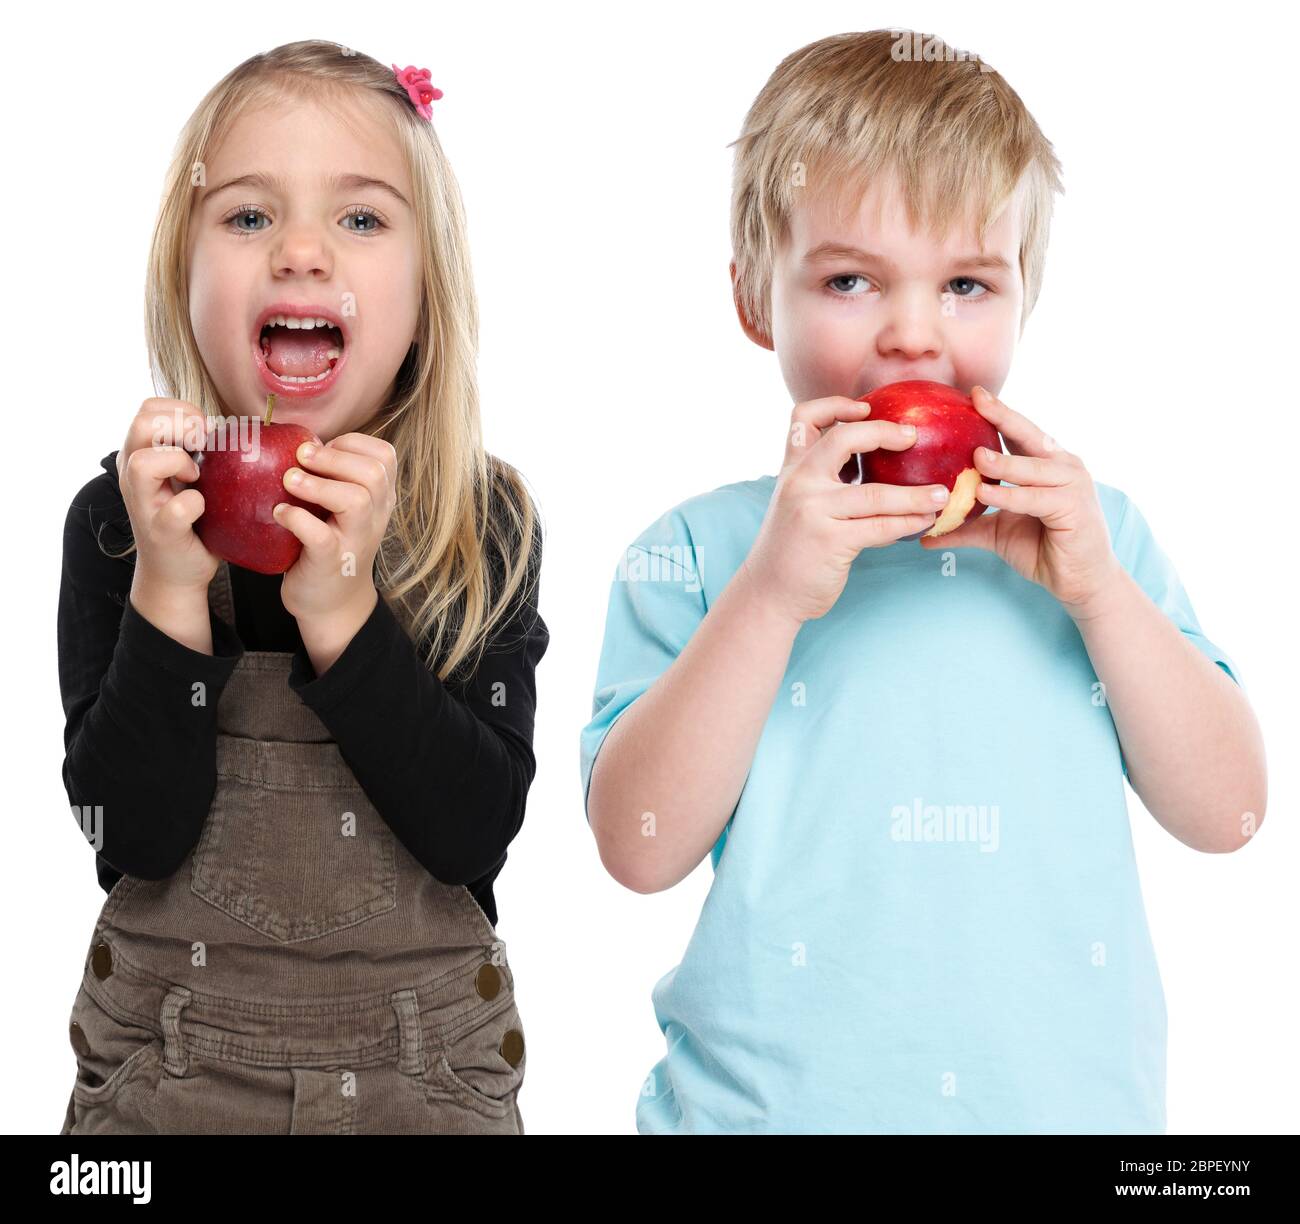 Kinder Apfel Obst Früchte essen Herbst gesunde Ernährung isoliert Freisteller freigestellt vor einem weissen Hintergrund Stock Photo